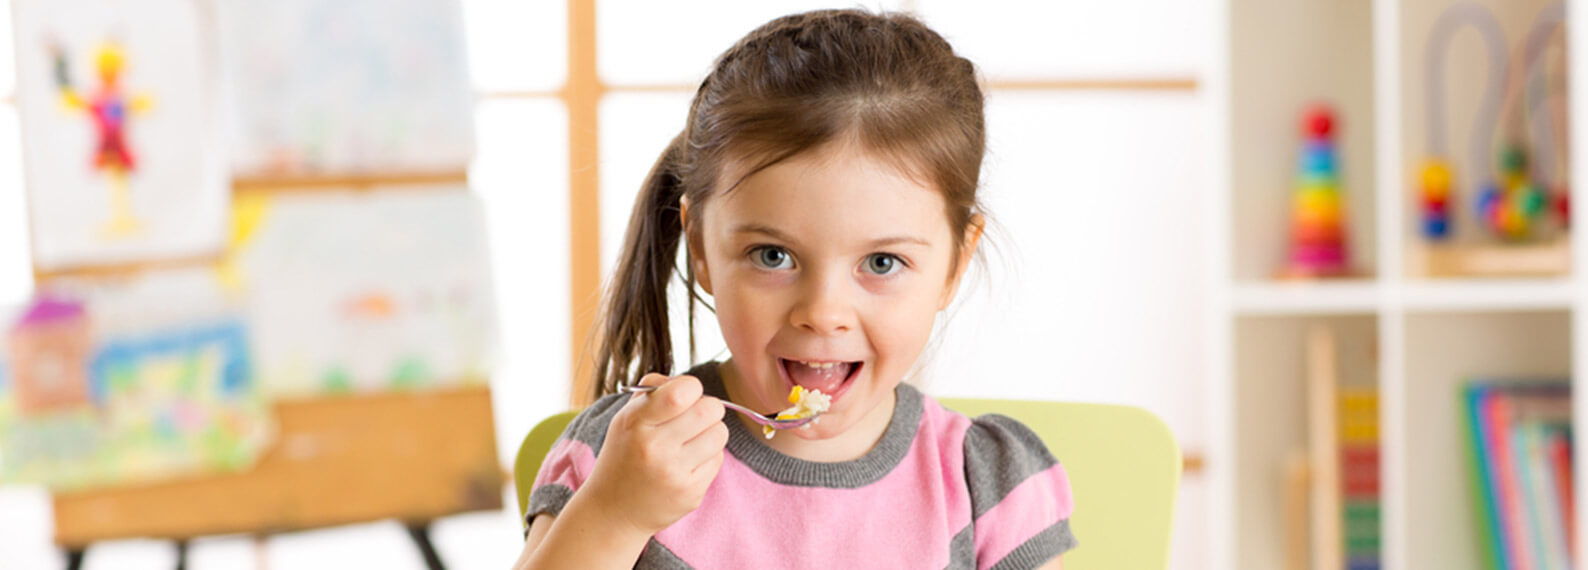 5 snacks rápidos y saludables para la escuela, ¡les encantaran a los niños!